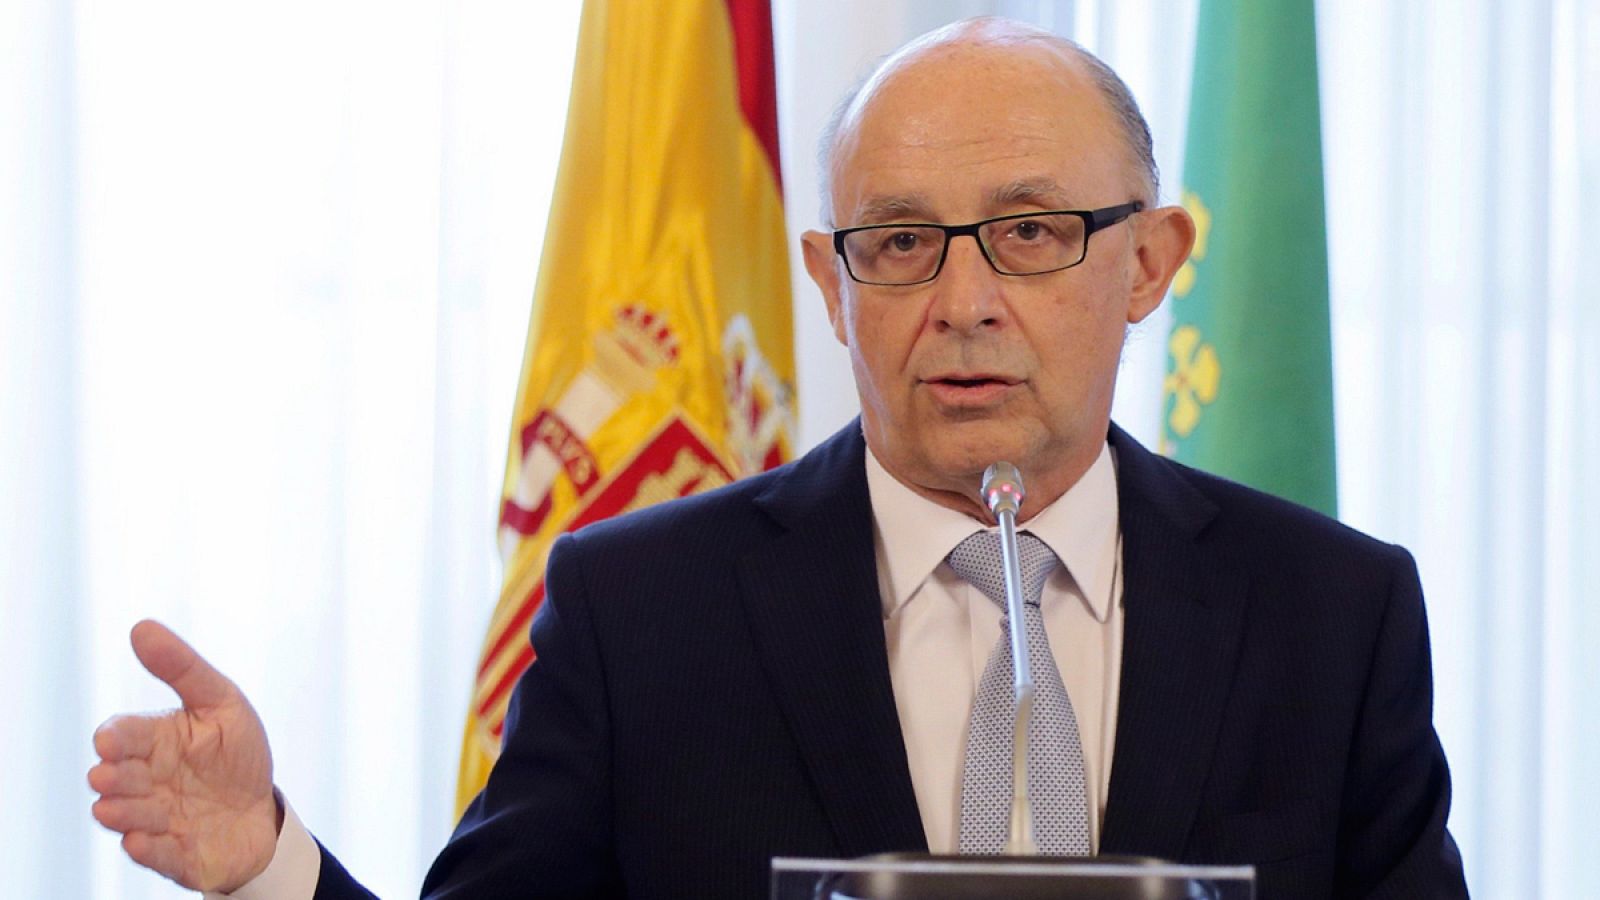 El ministro de Hacienda y Administraciones Públicas, Cristóbal Montoro, en Extremadura